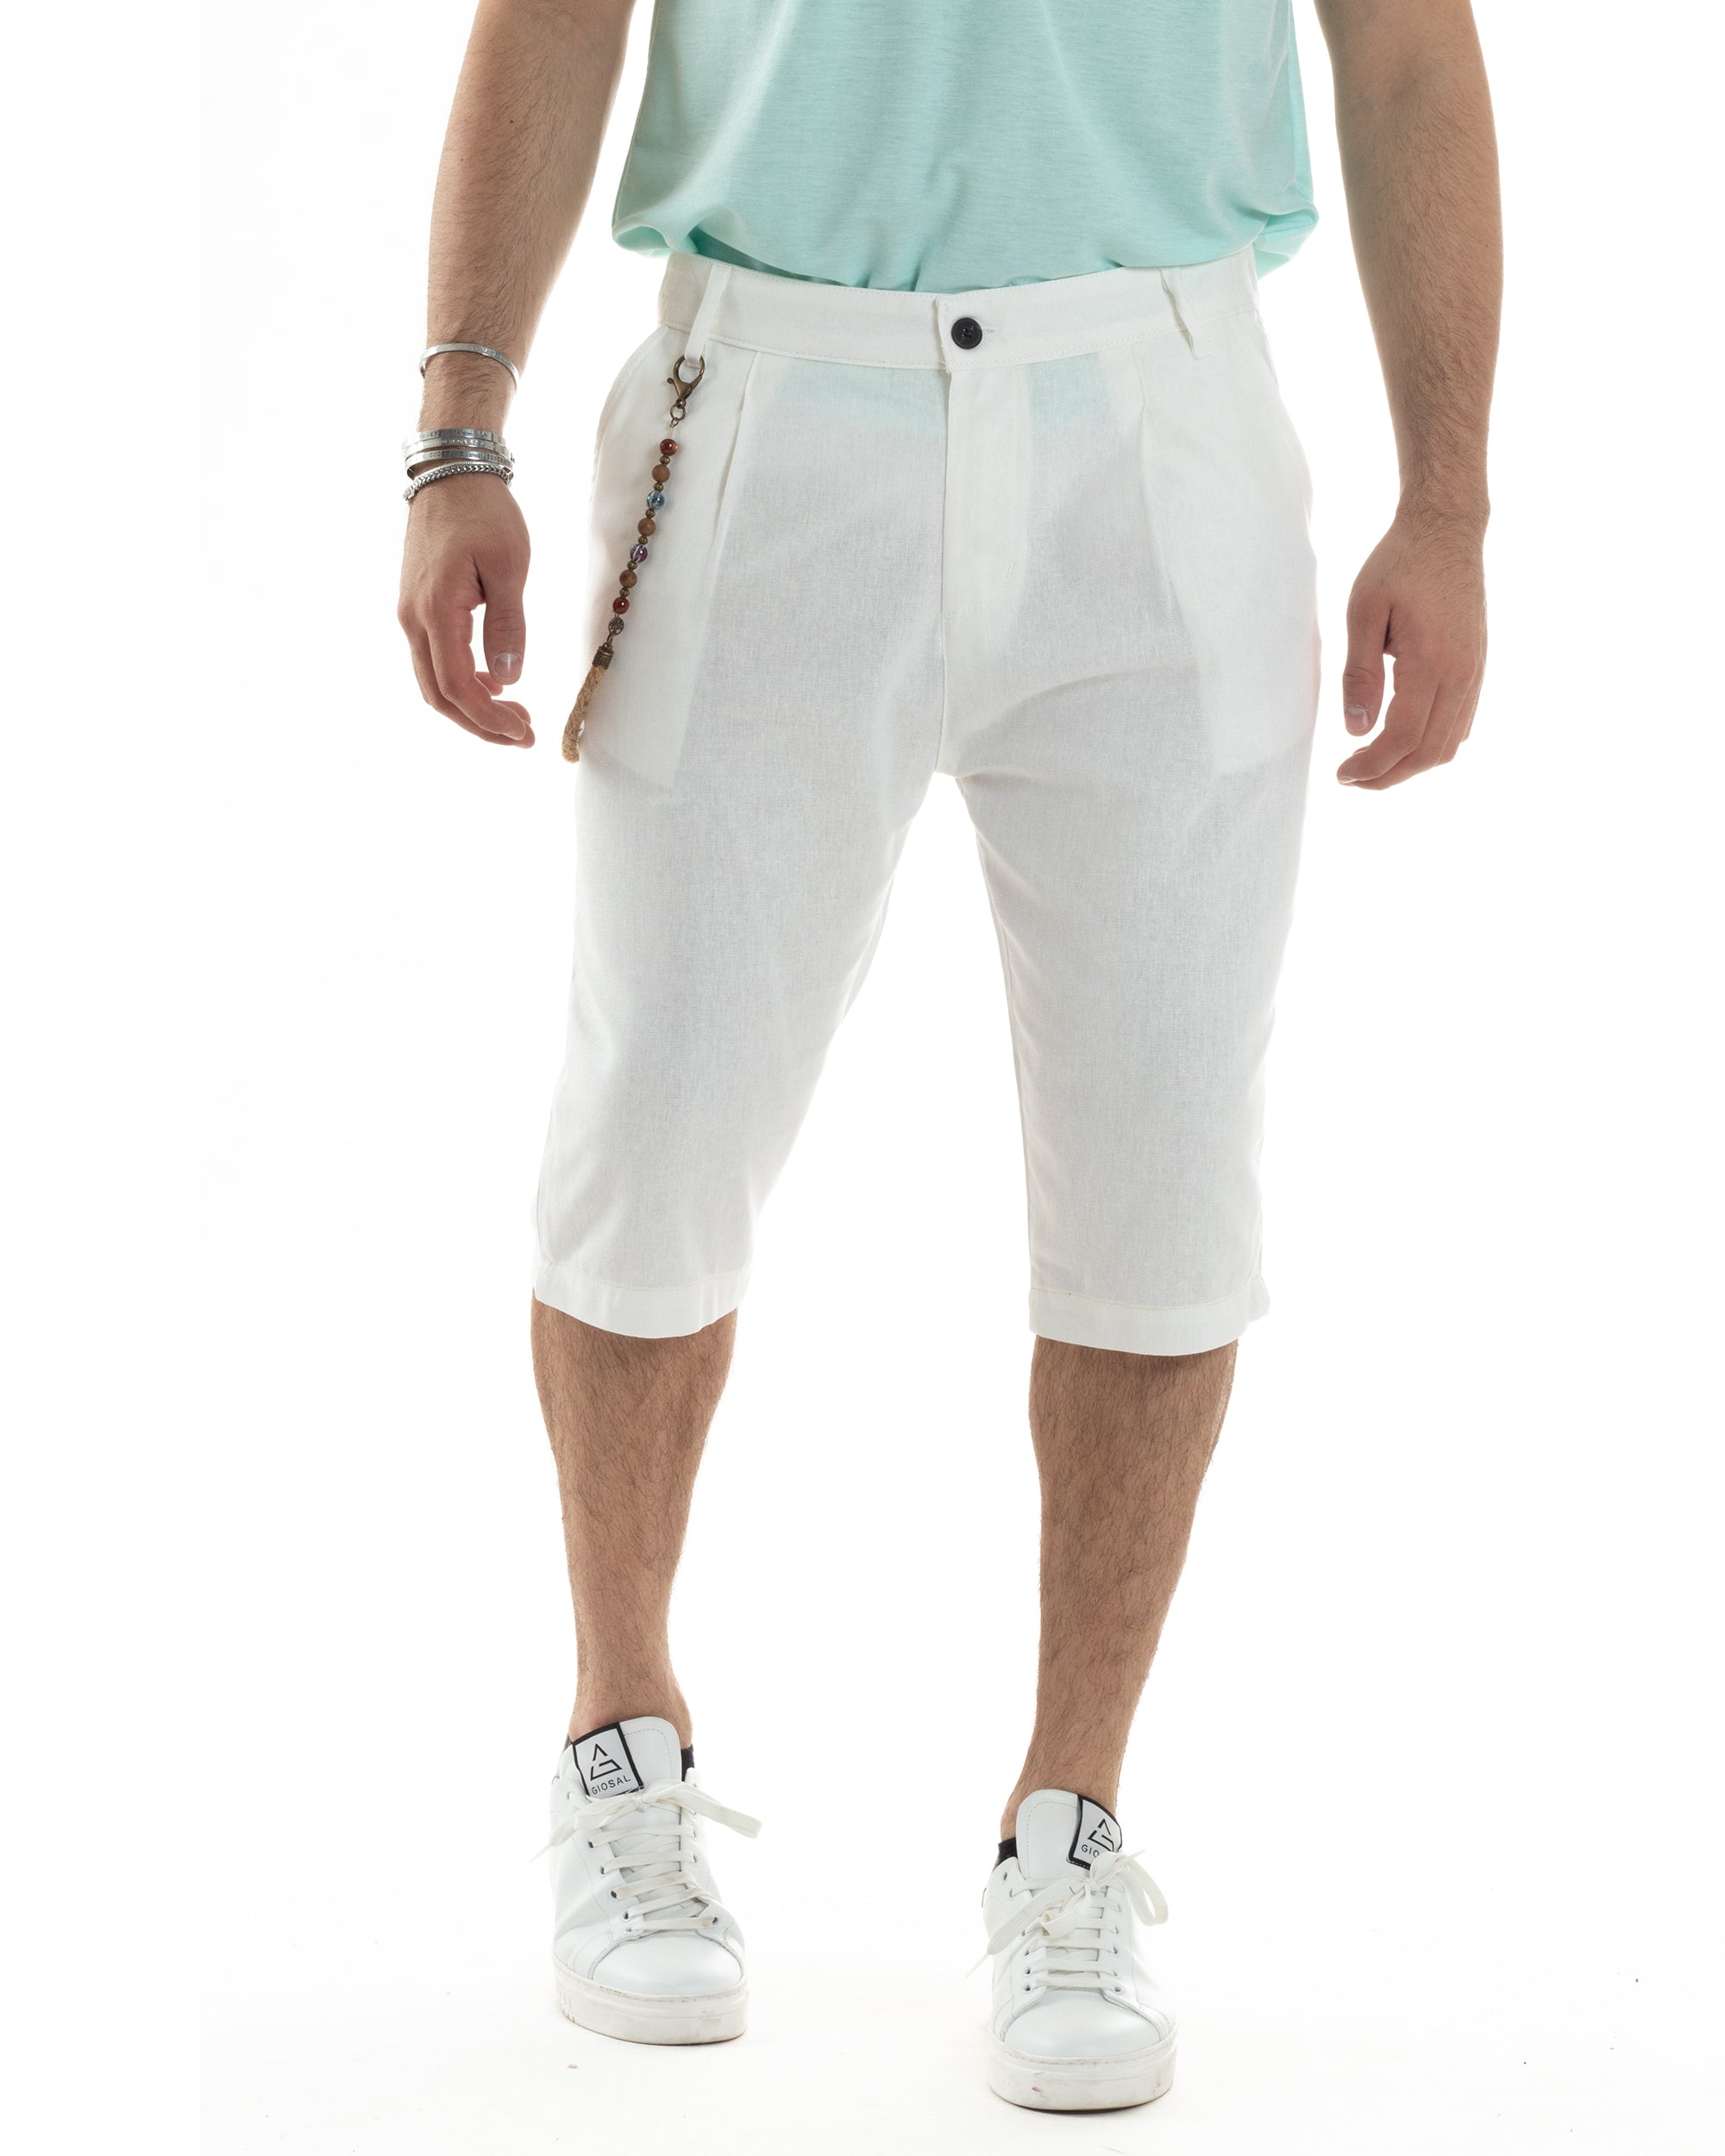 Bermuda Pantaloncino Uomo Corto Lino Tasca America Classico Sartoriale Comodo Casual Tinta Unita Bianco GIOSAL-PC1954A